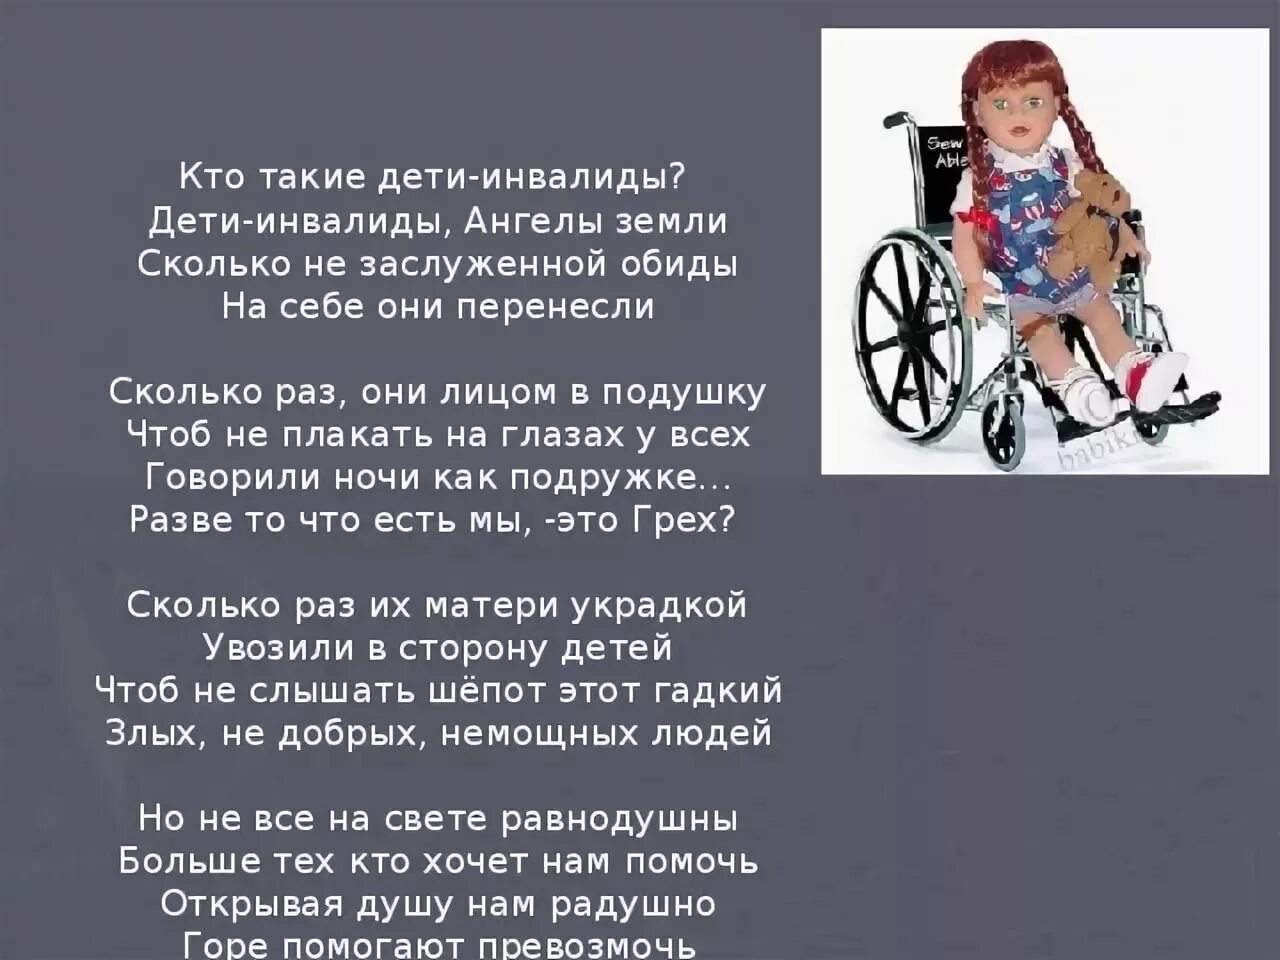 Обидела инвалида. Цитаты про детей инвалидов. Стихи про инвалидов. Цитаты про инвалидов. Высказывание о детях инвалидах.